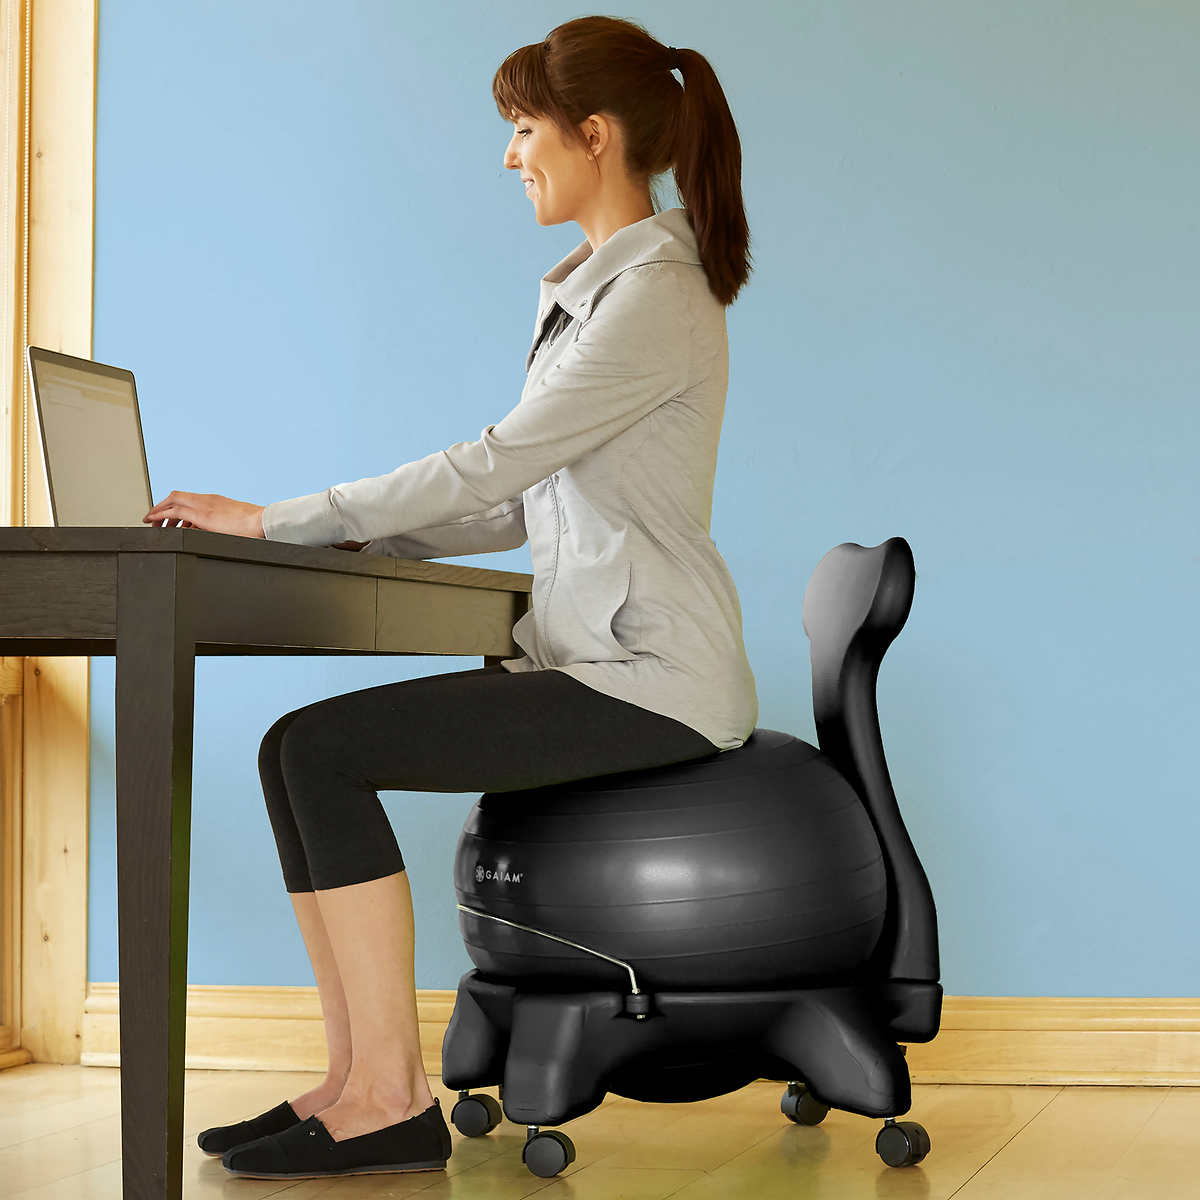 Gaiam Balance Ball Chair Costco